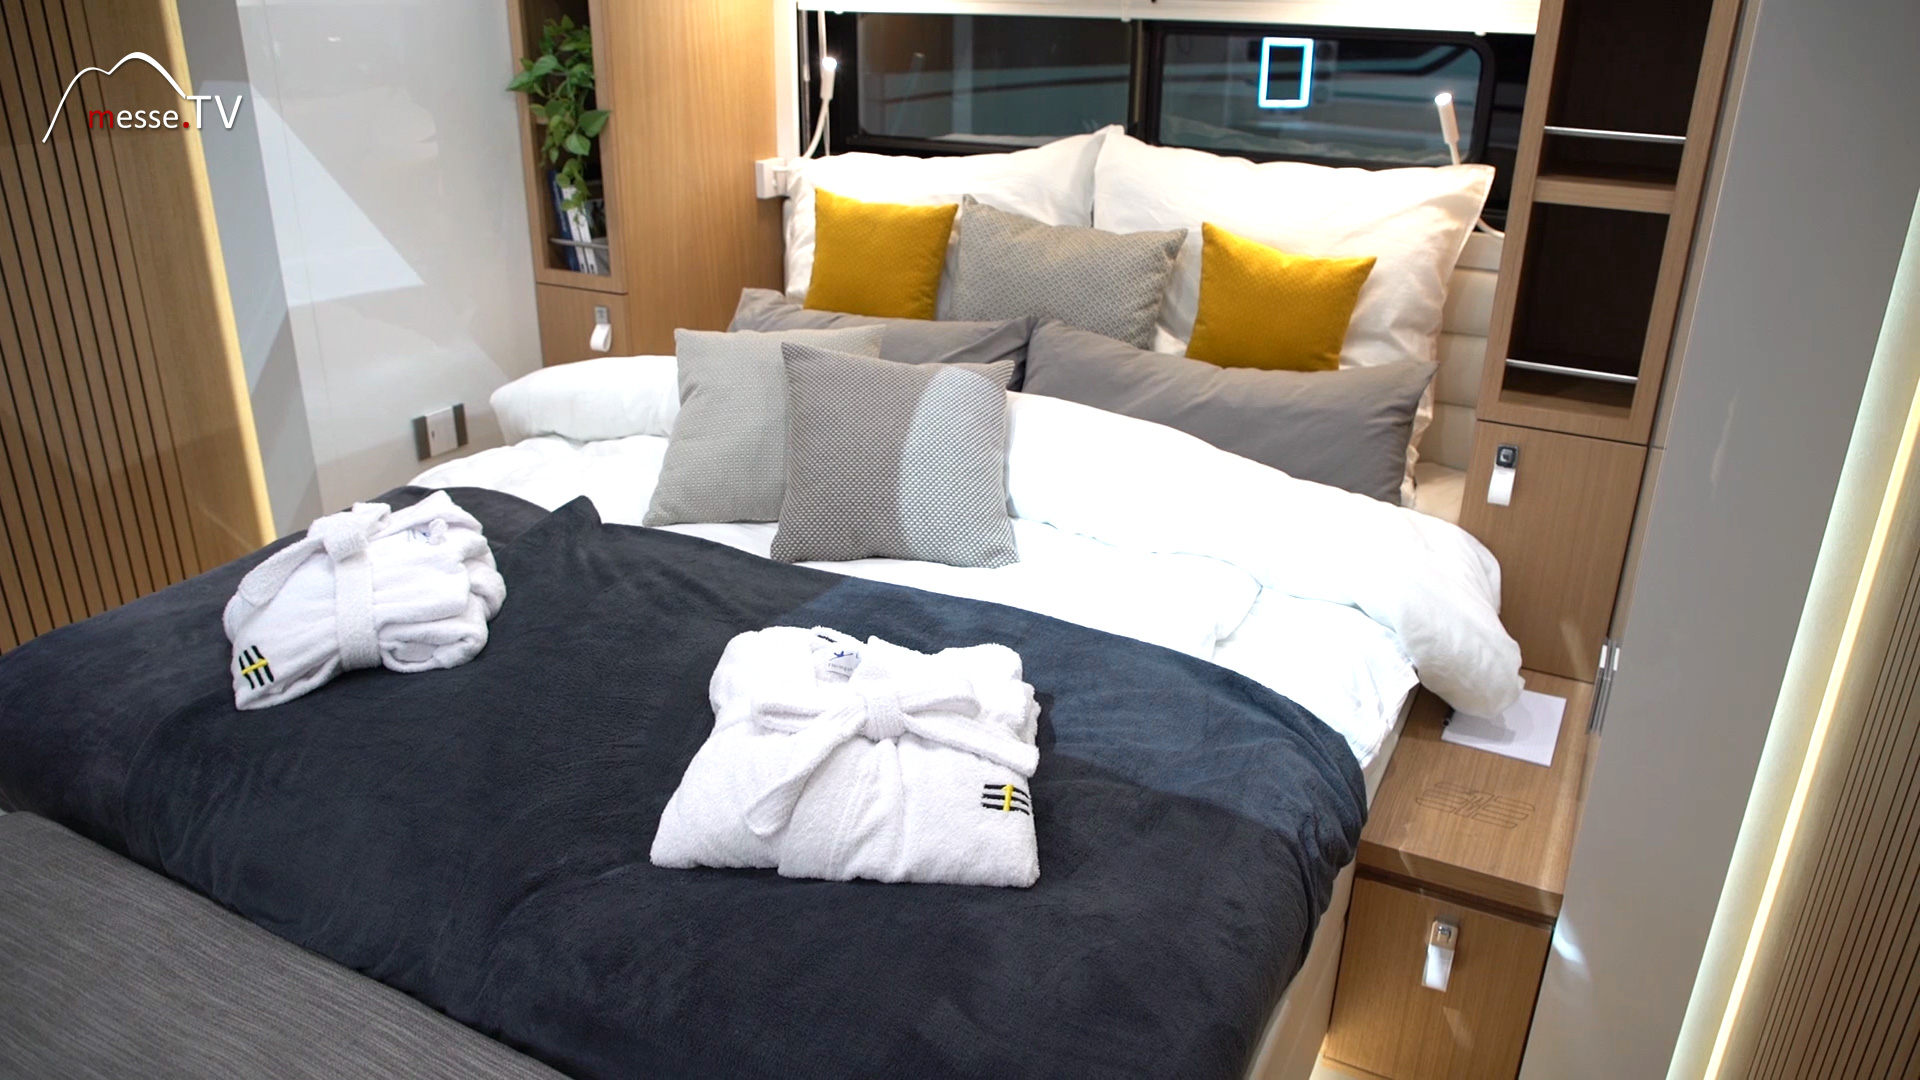 Eila Schlafbereich 5 Sterne Camping Suite auf Rädern Caravan Salon 2020 Düsseldorf